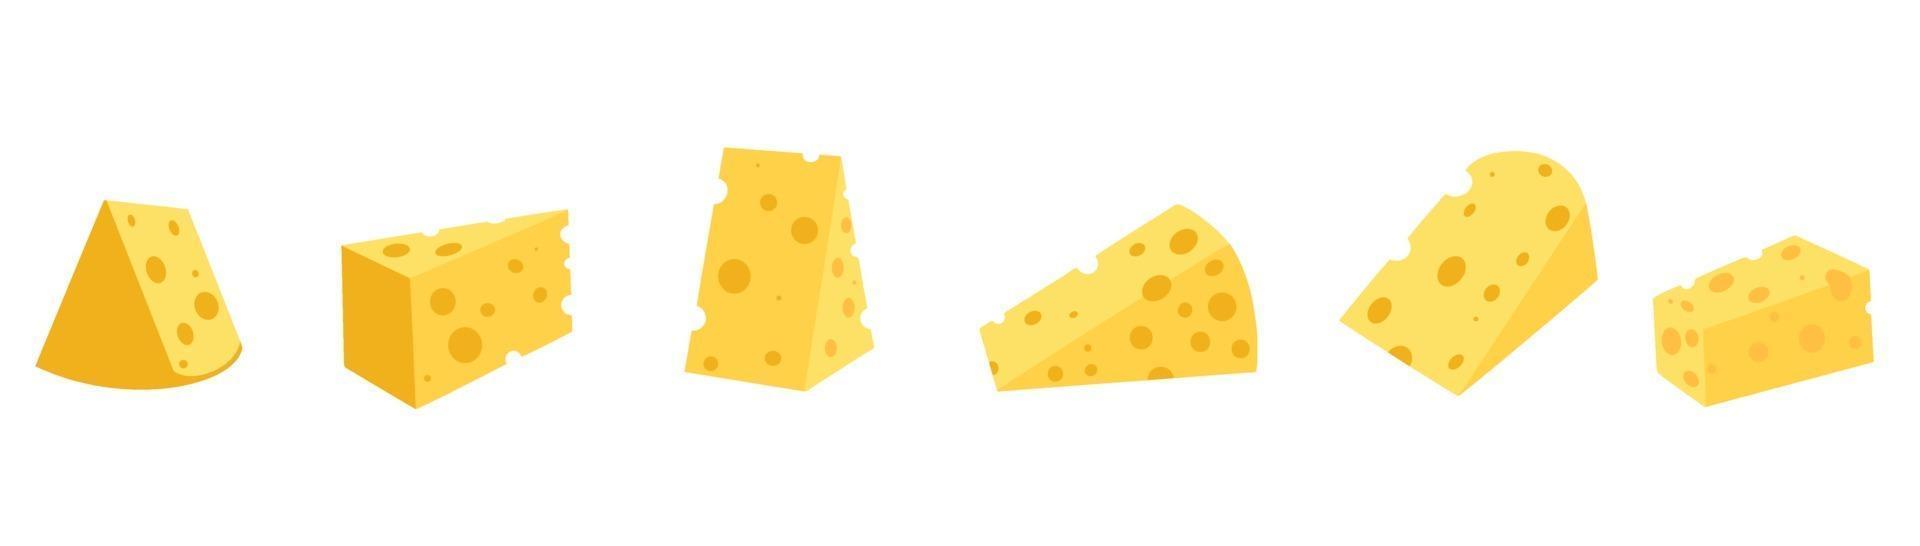 ensemble de fromages de différentes formes vecteur